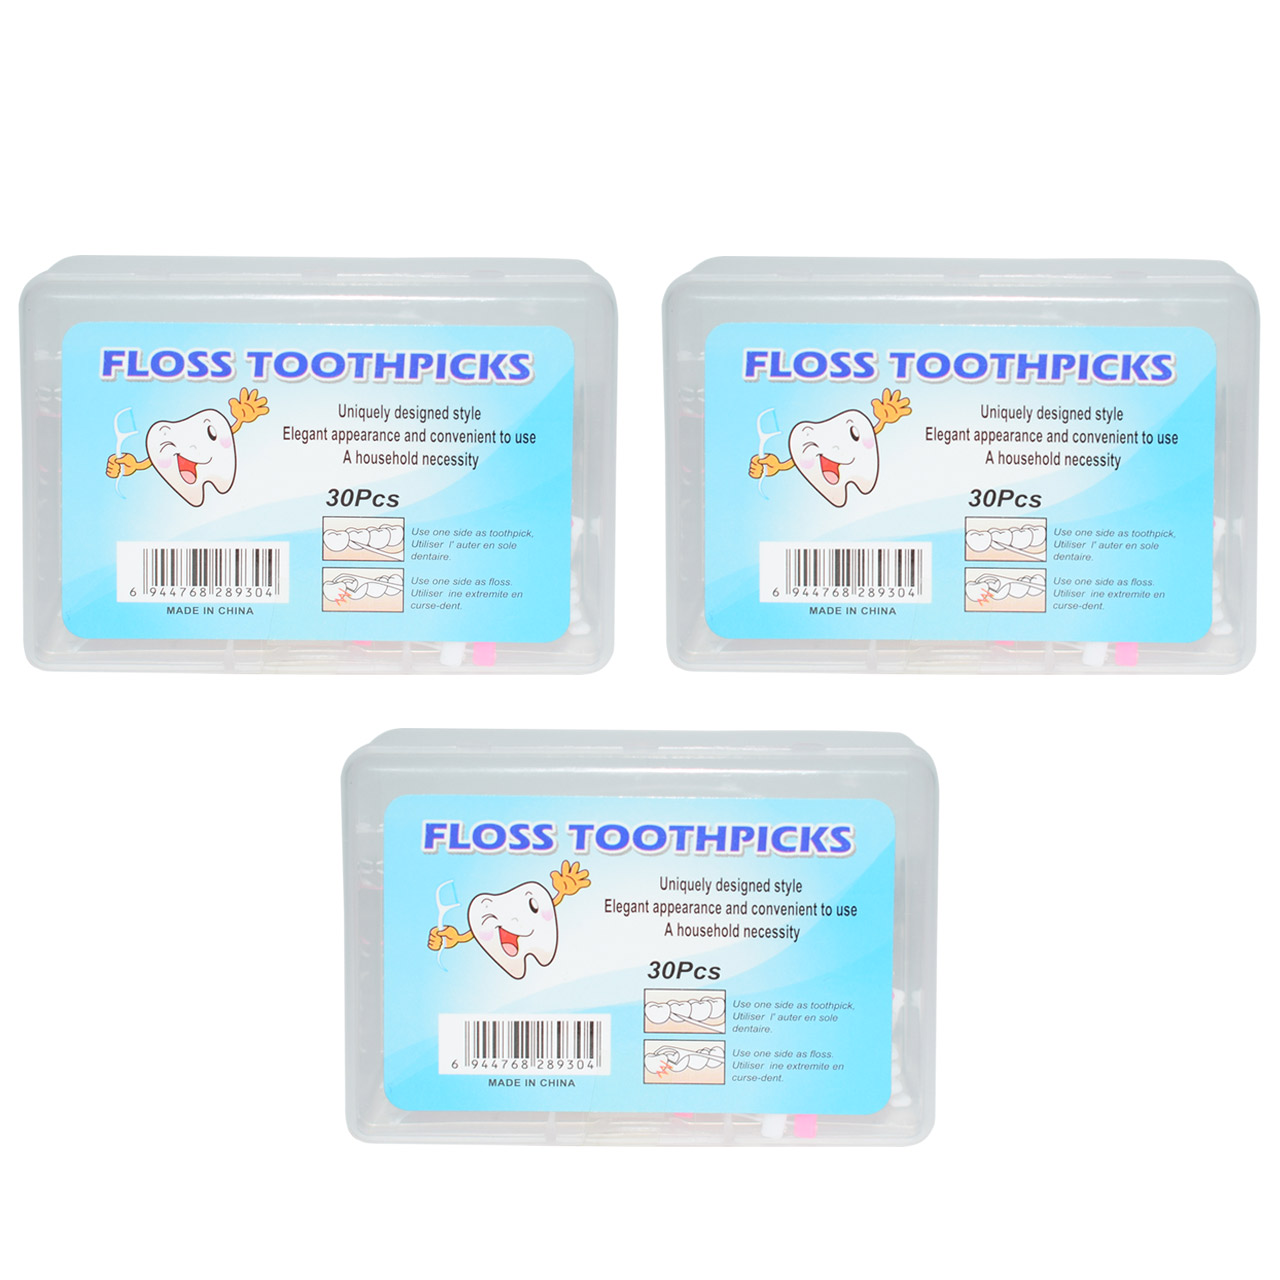 نخ دندان فلاس توتپیکس مدل 02 3 بسته 30 عددی